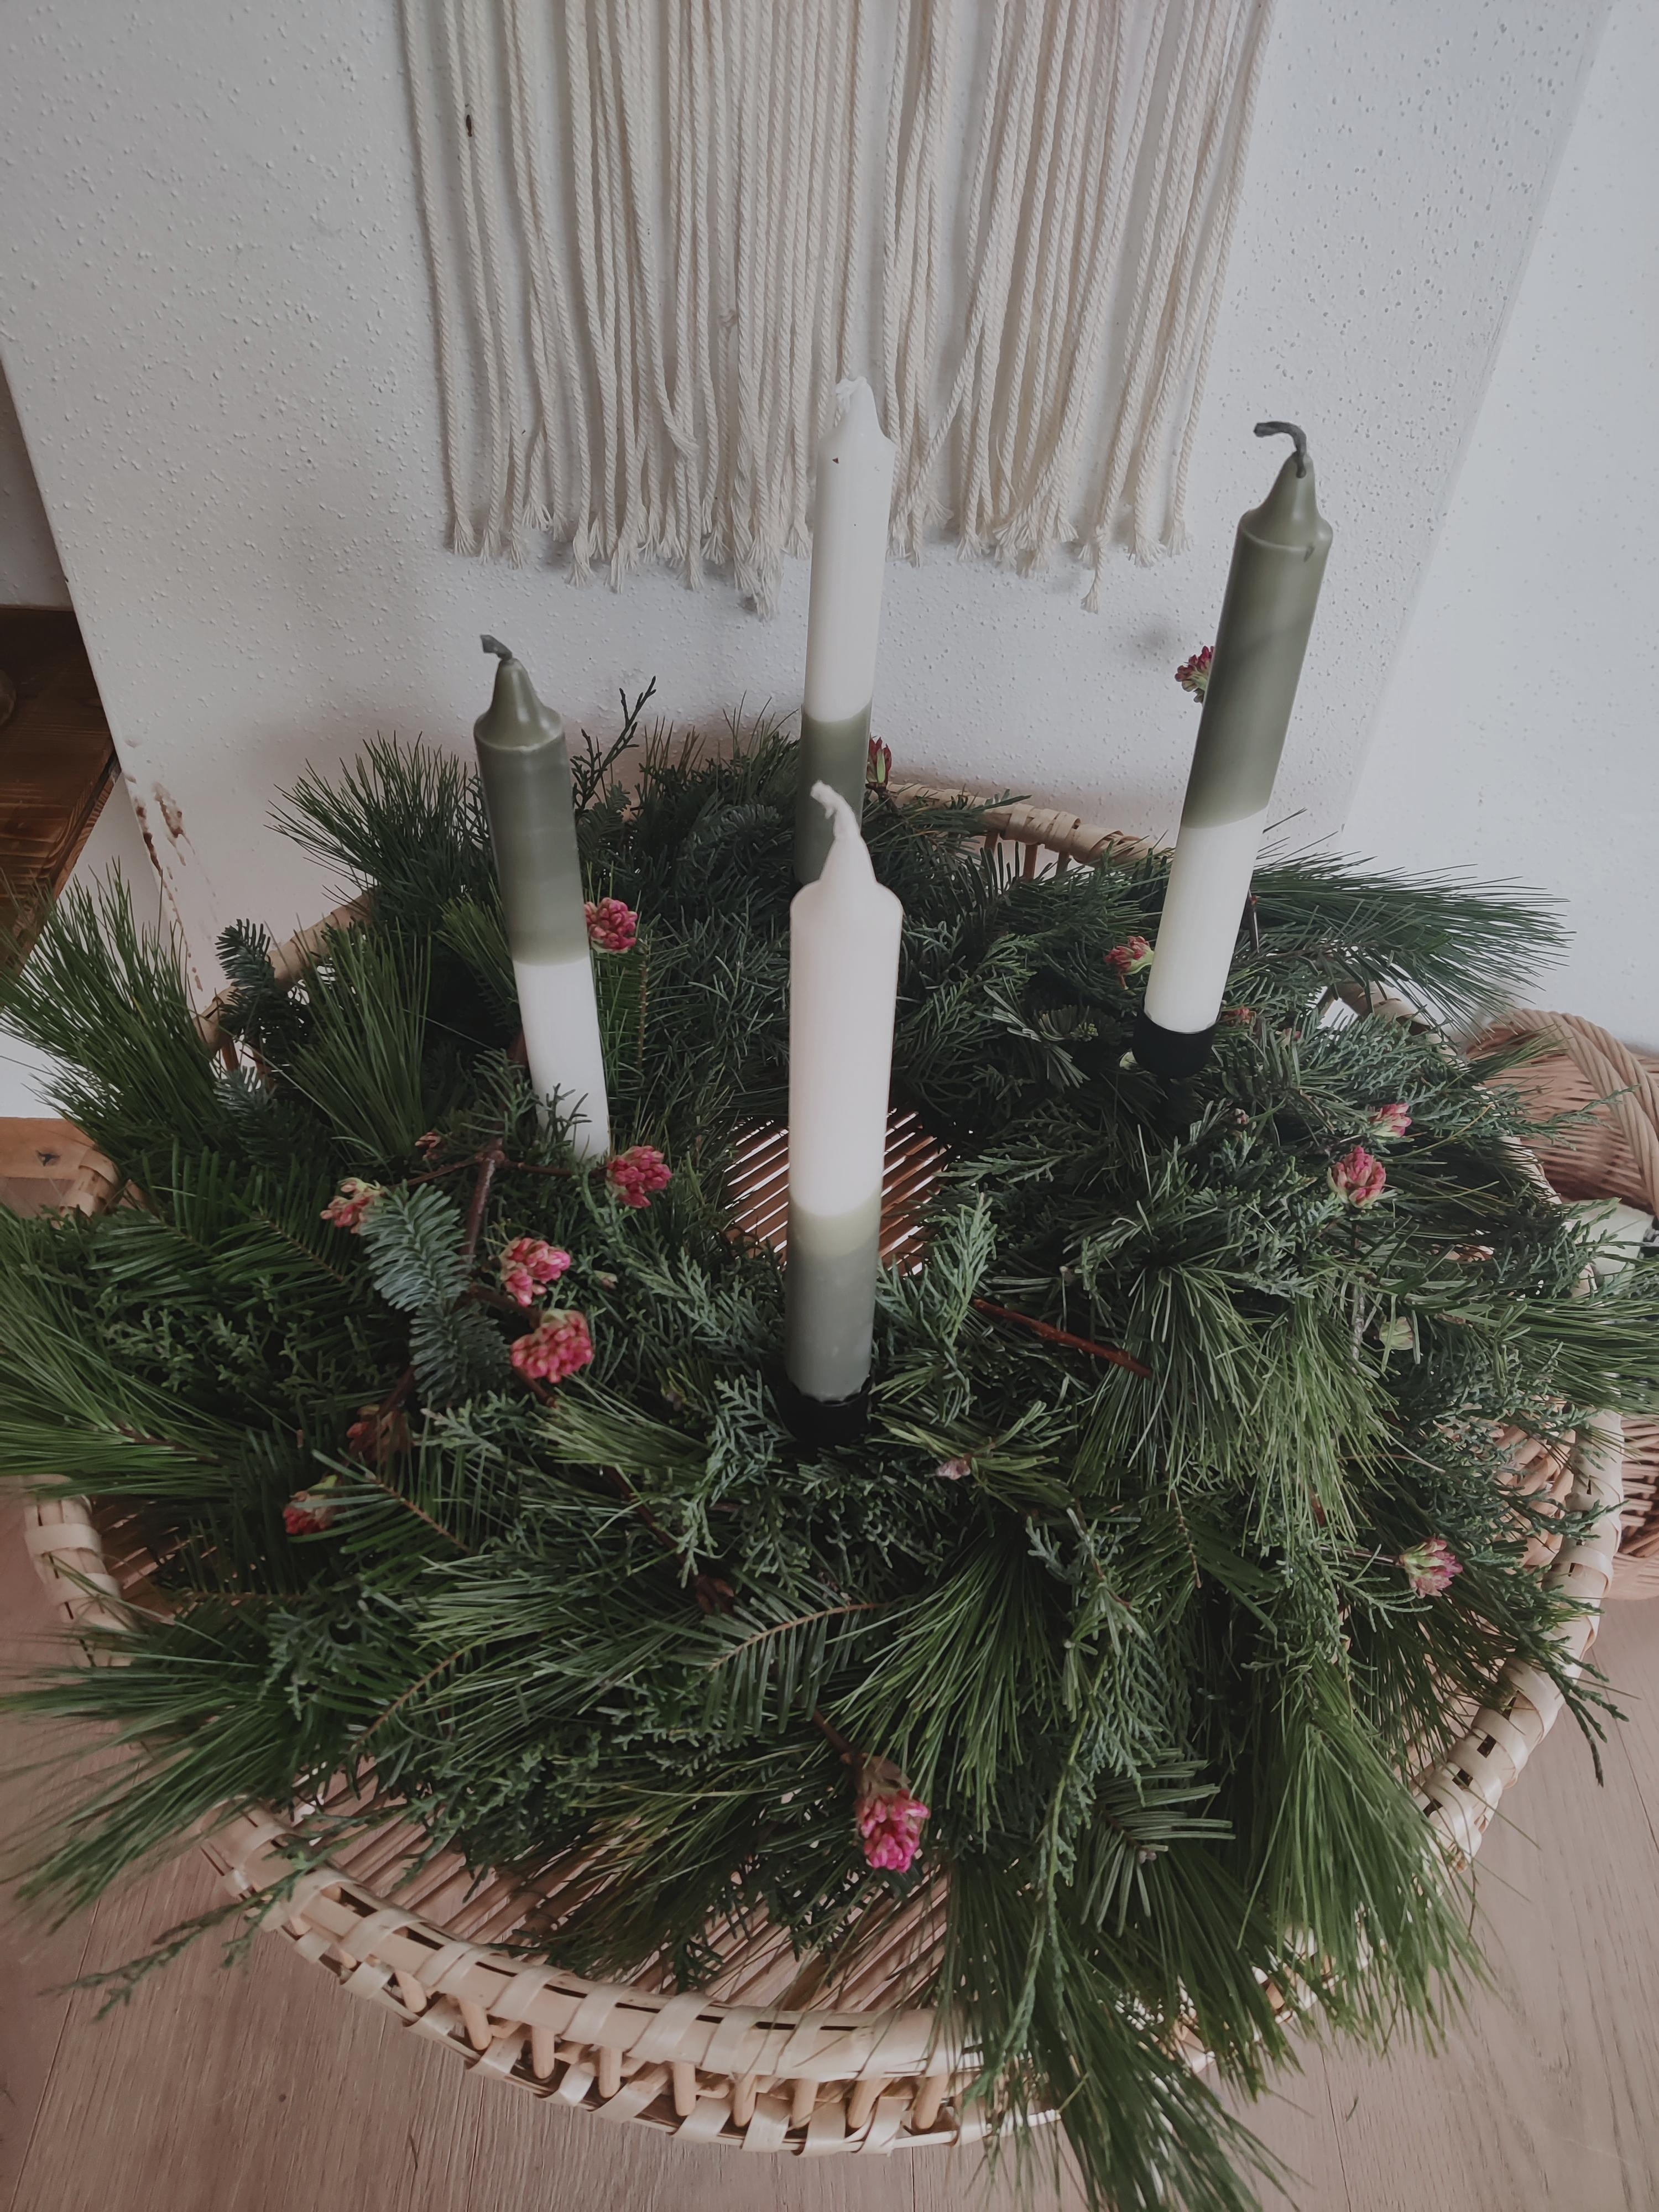 1. Advent
#advent #adventkranz #grün #weihnachten #dipdye